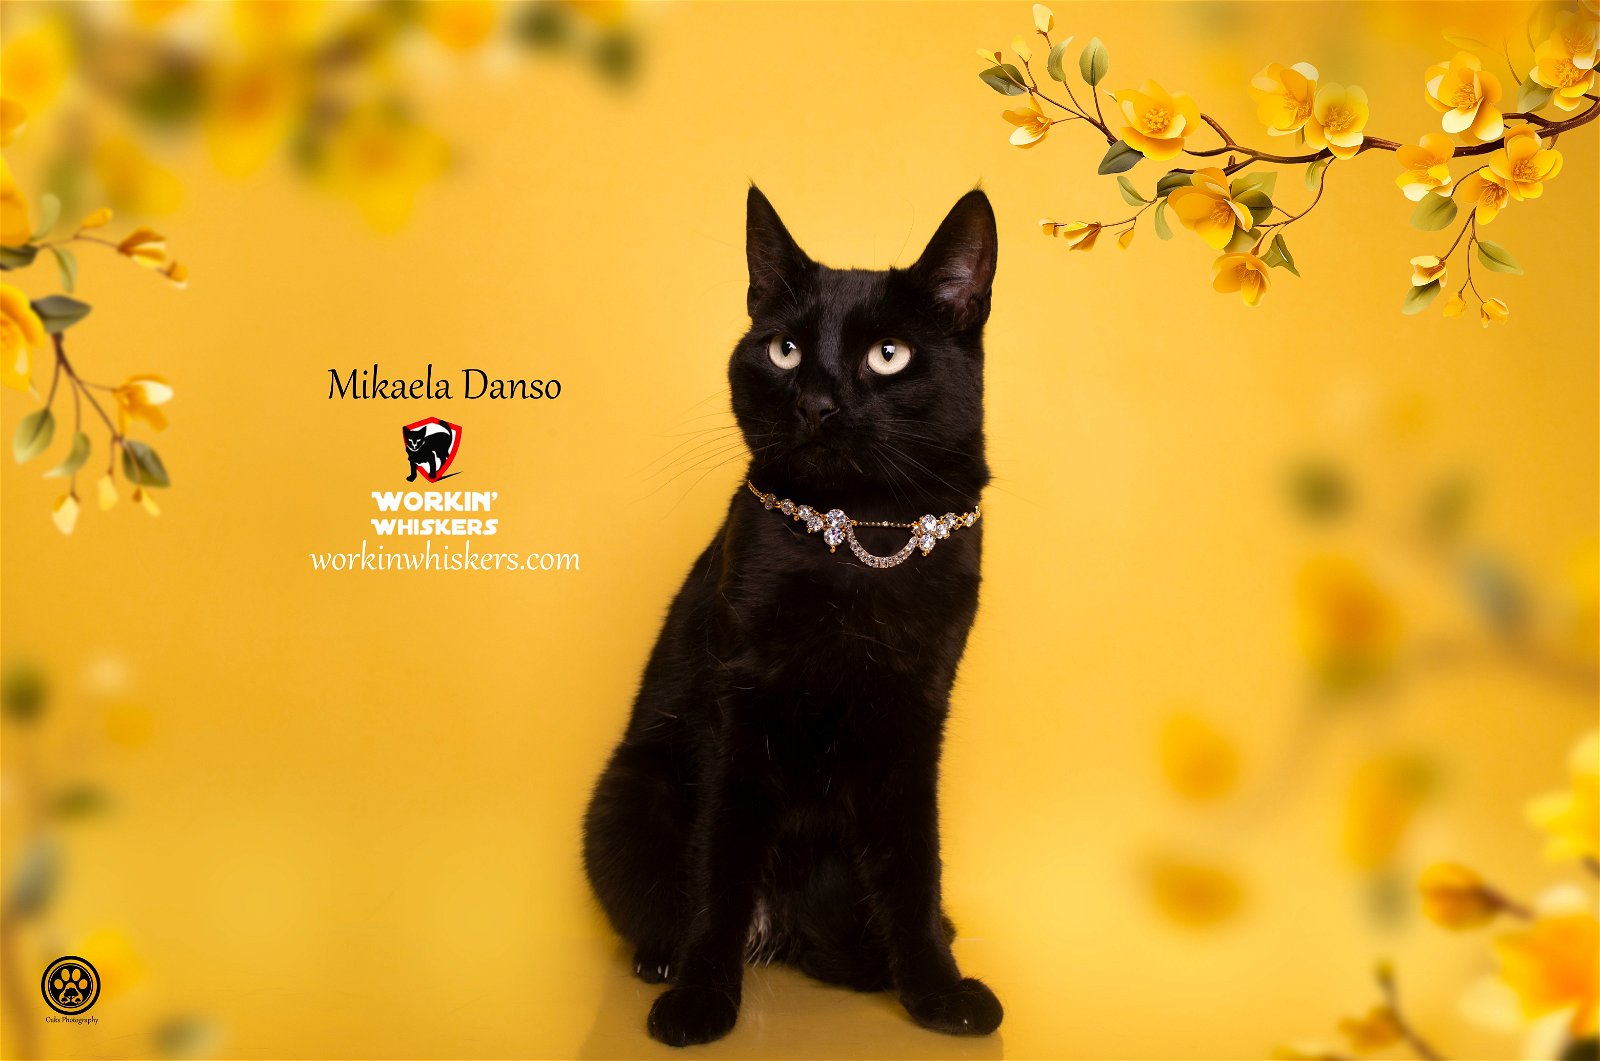 adoptable Cat in Hemet, CA named MIKAELA DANSO